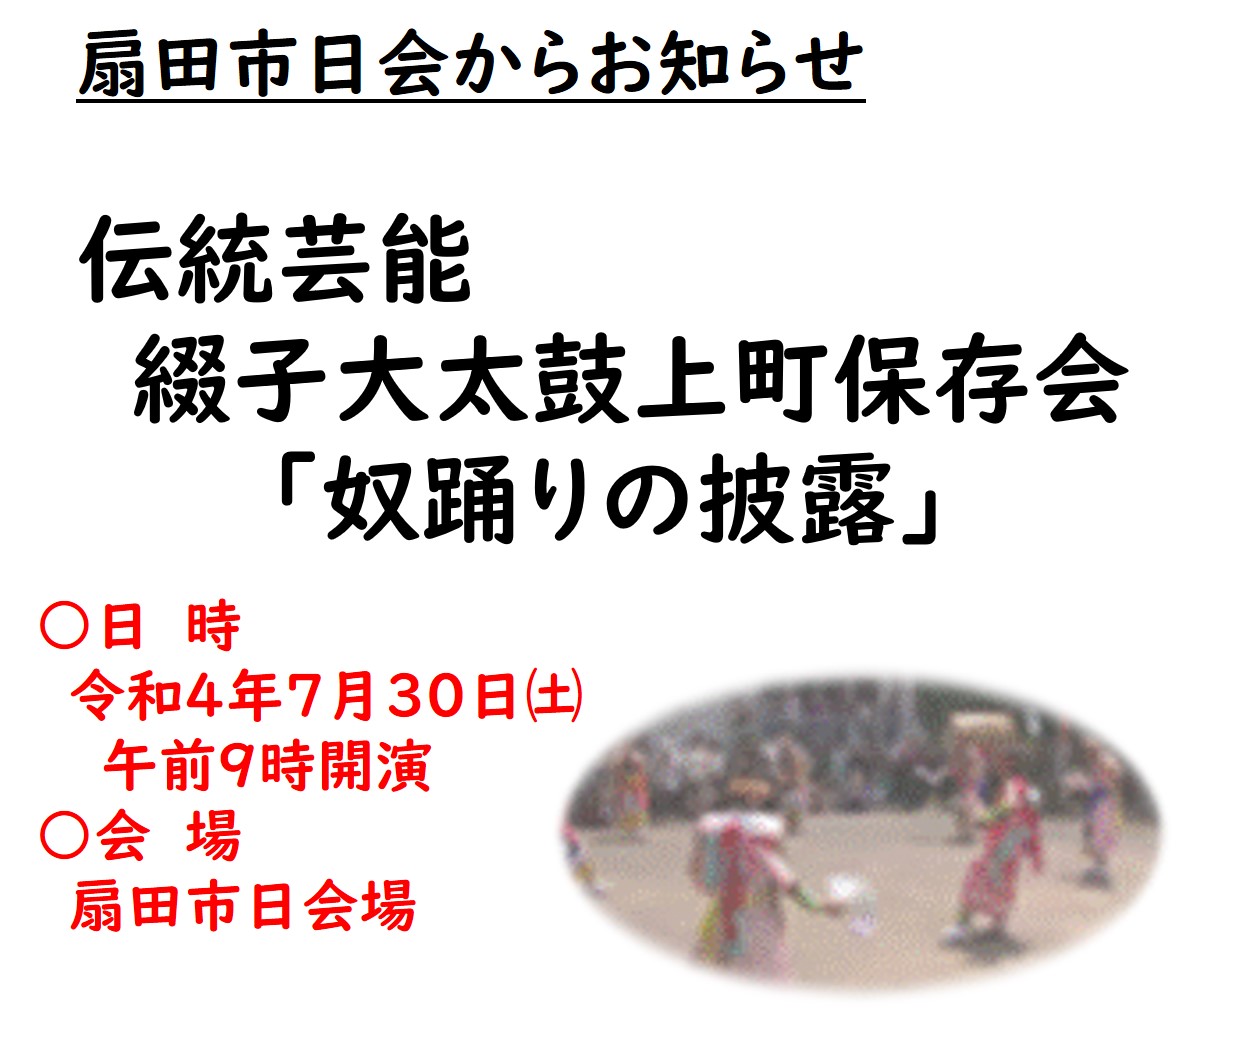 扇田市日にて伝統芸能「綴子太鼓の奴踊り」が披露されます